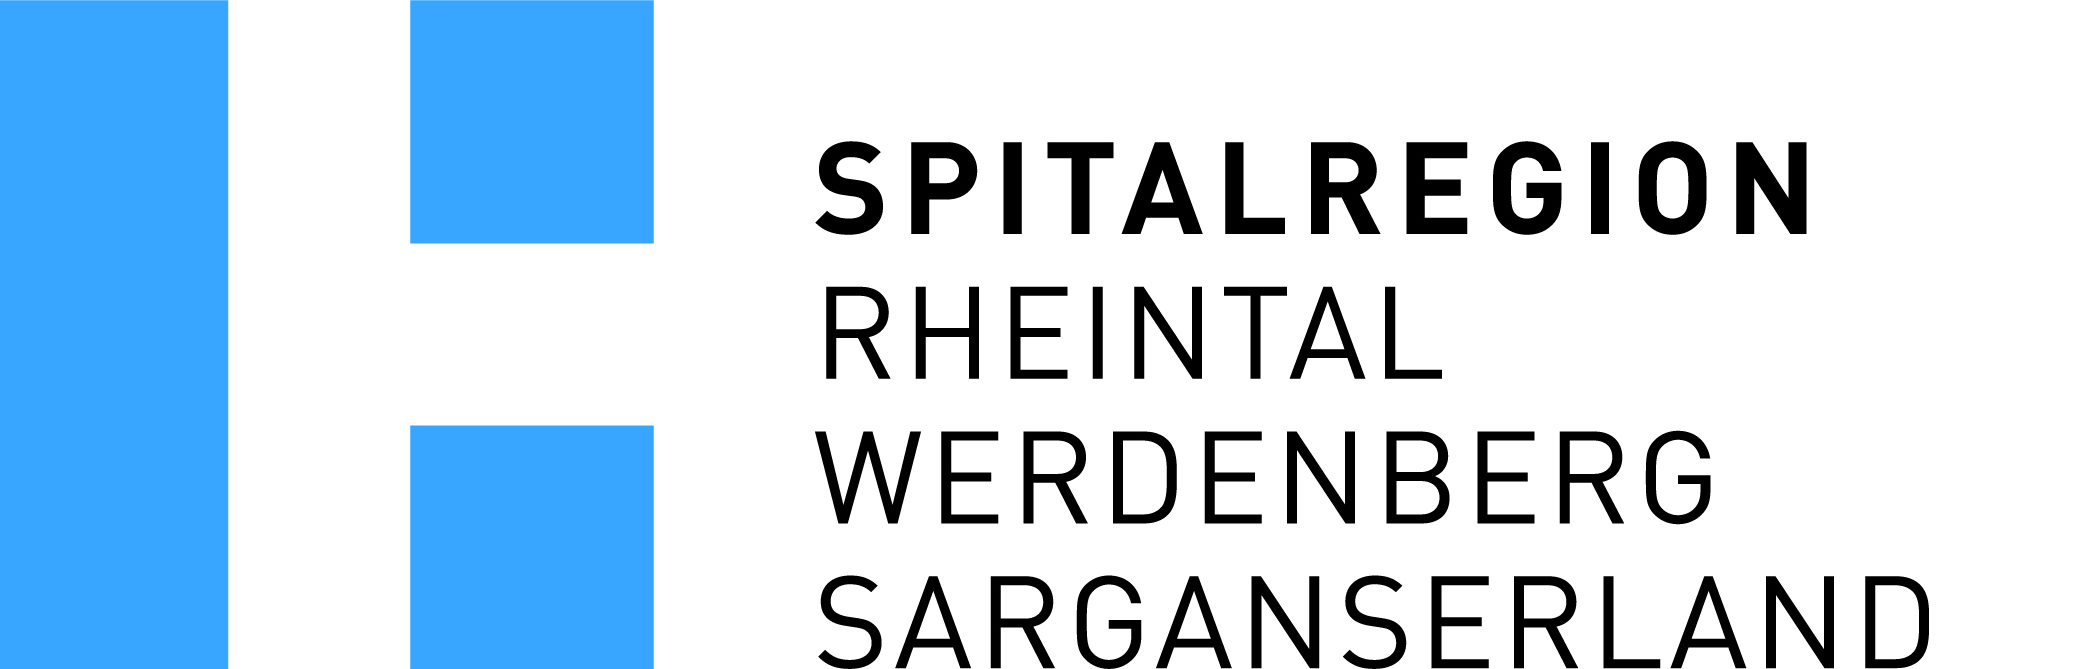 Spitalregion Rheintal Werdenberg Sarganserland